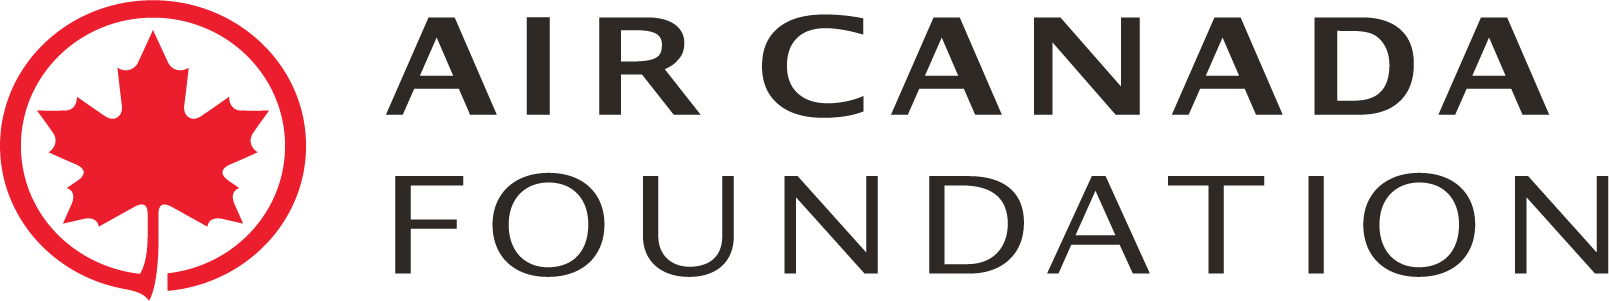 Air Canada Logo - Logo Canada Foundation